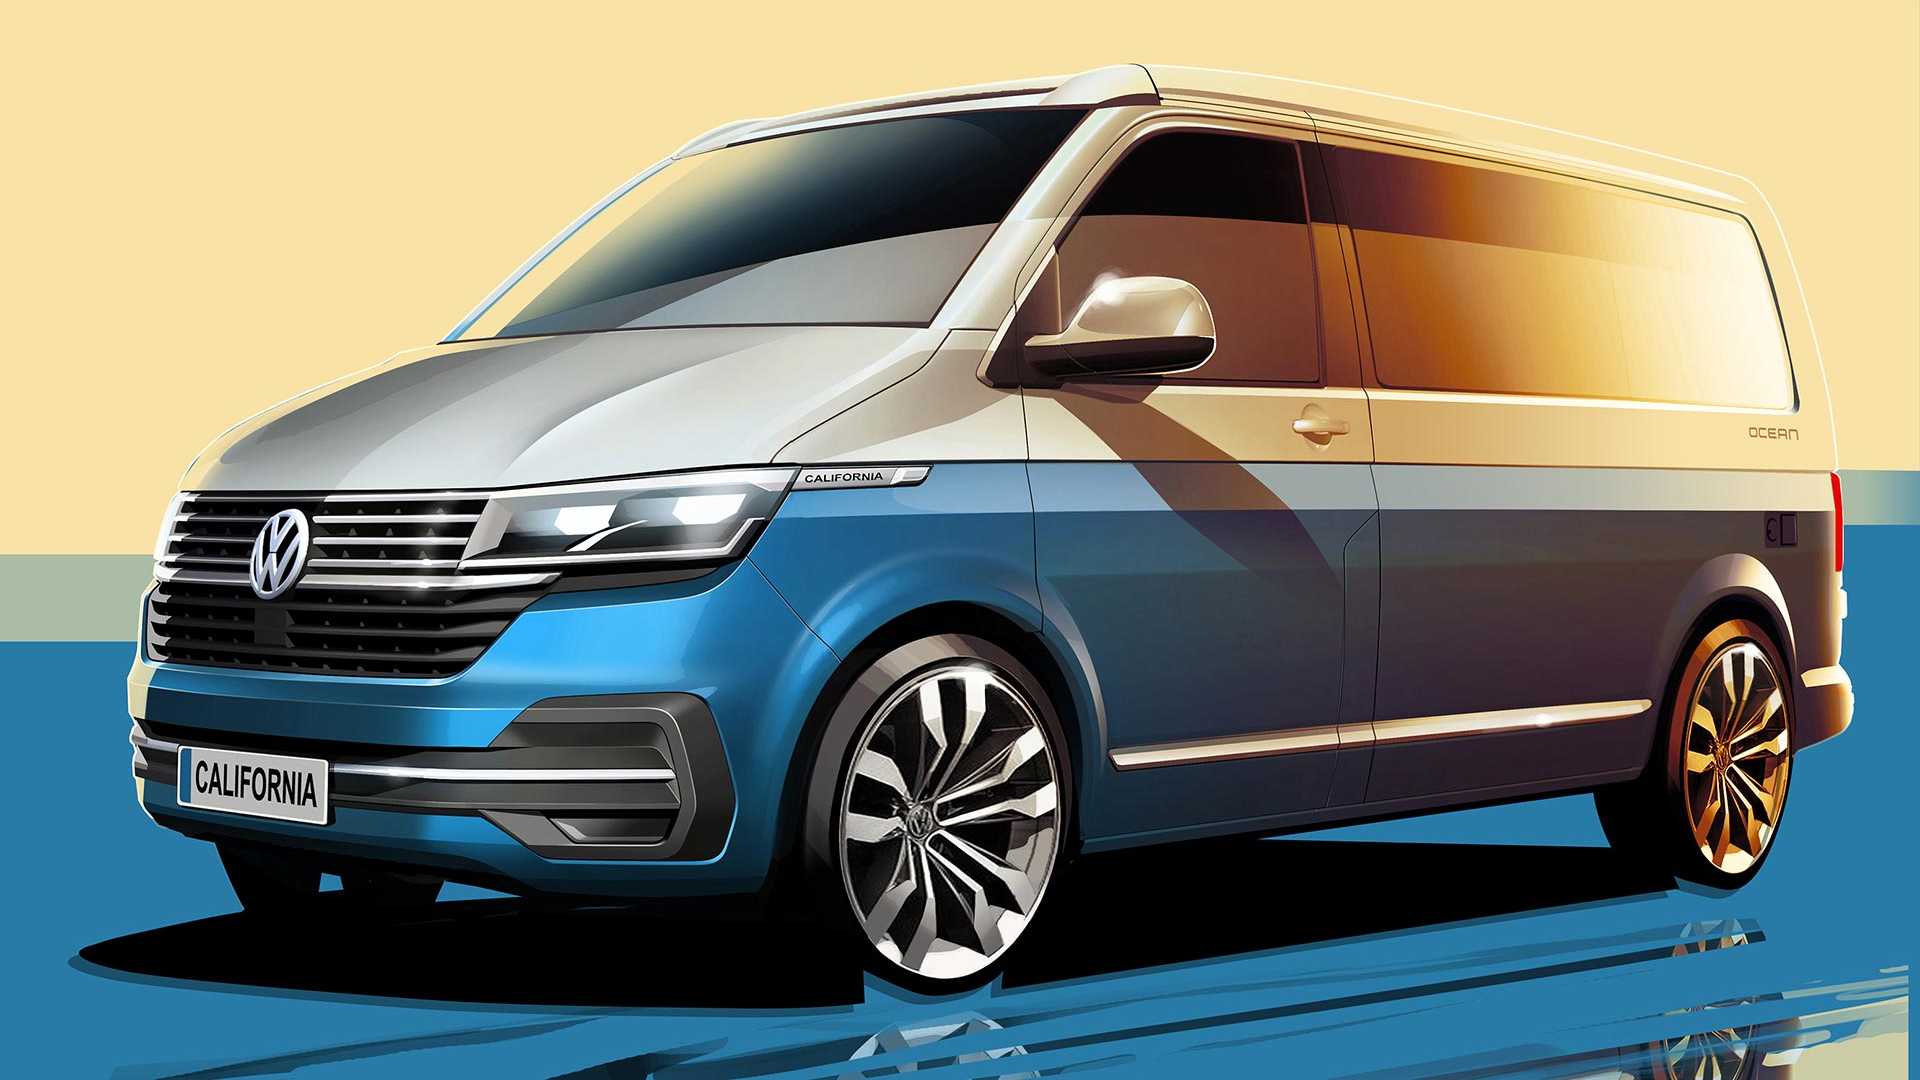 Volkswagen Multivan Wallpapers